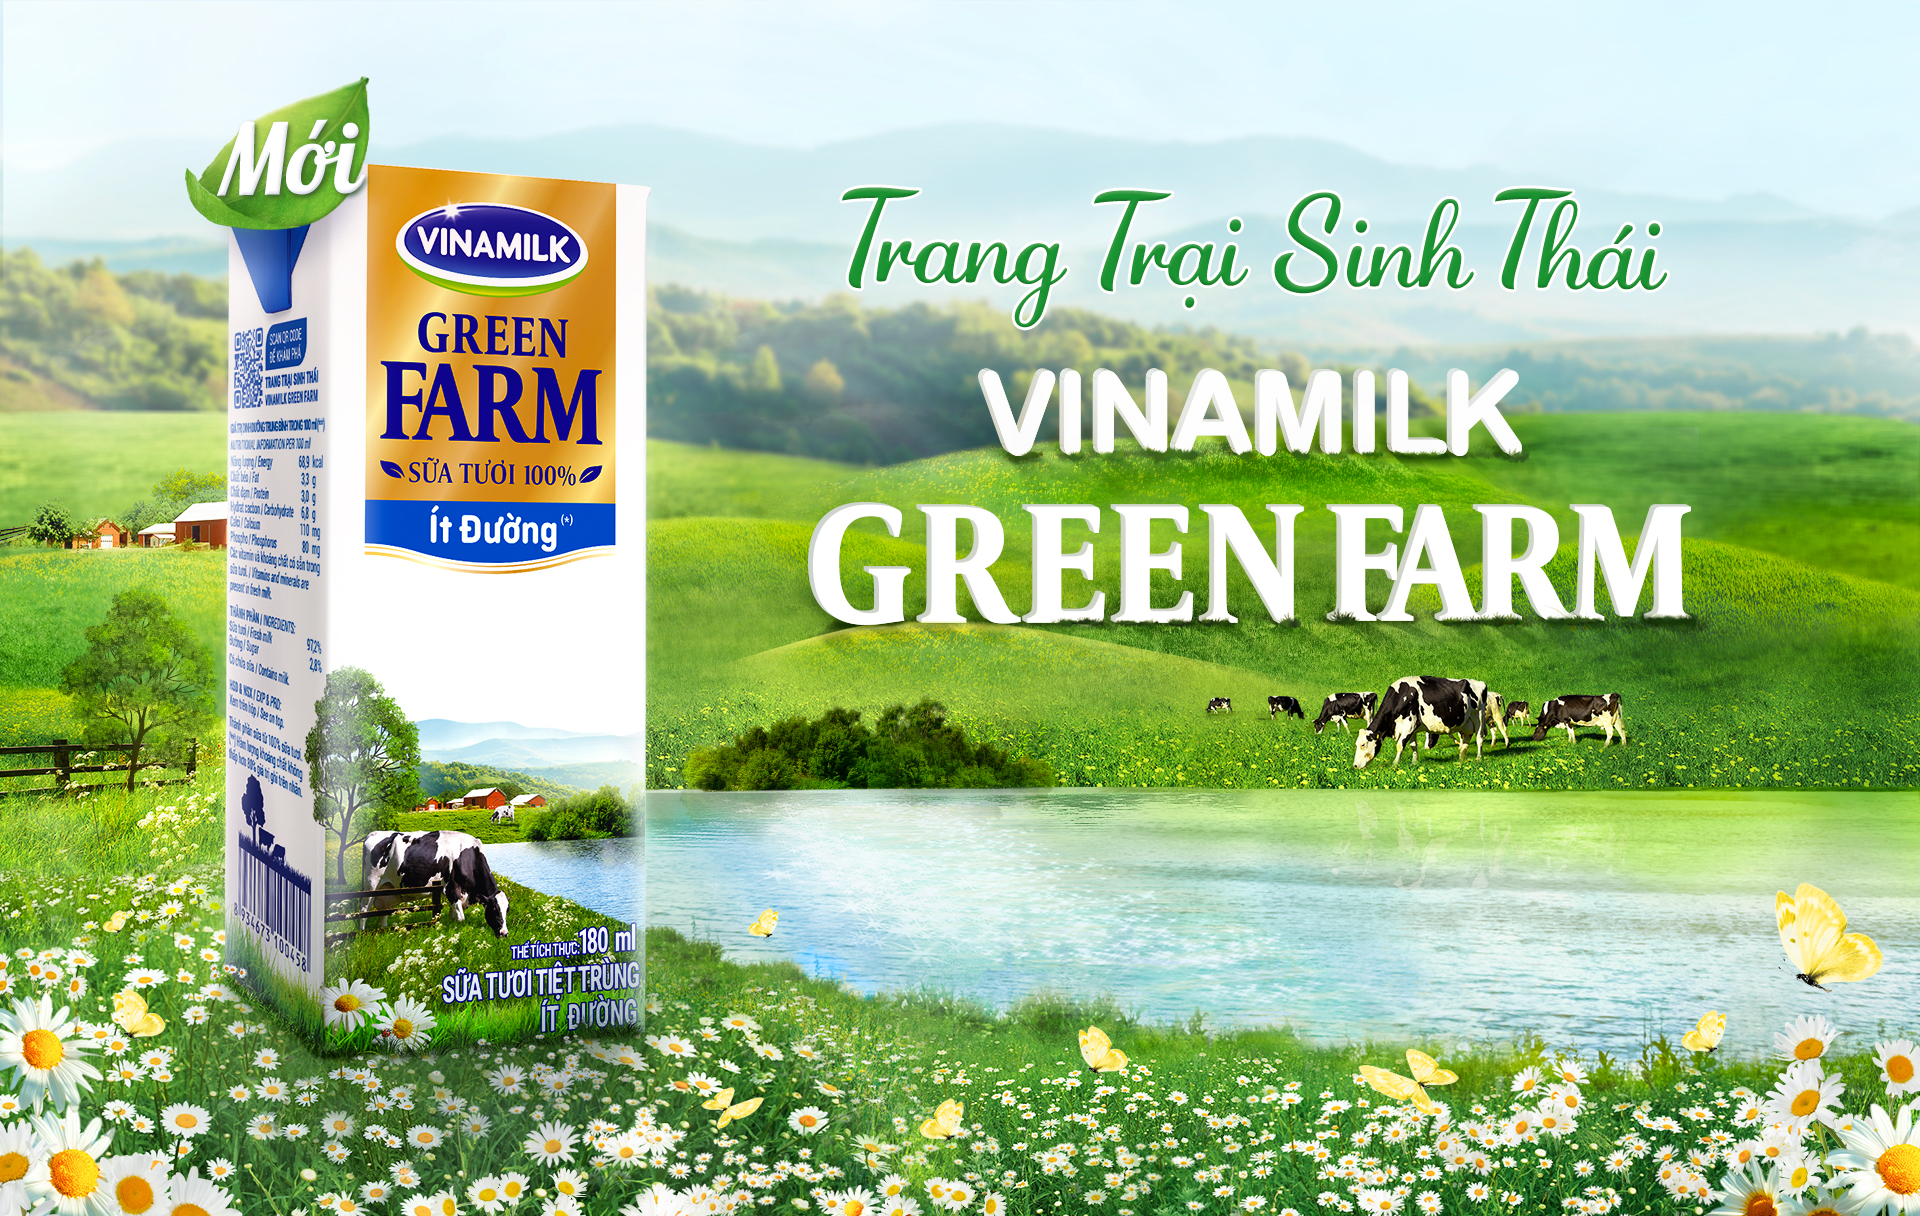 Kinh tế - Vinamilk Green Farm – Mô hình trang trại bò sữa phát triển bền vững (Hình 6).